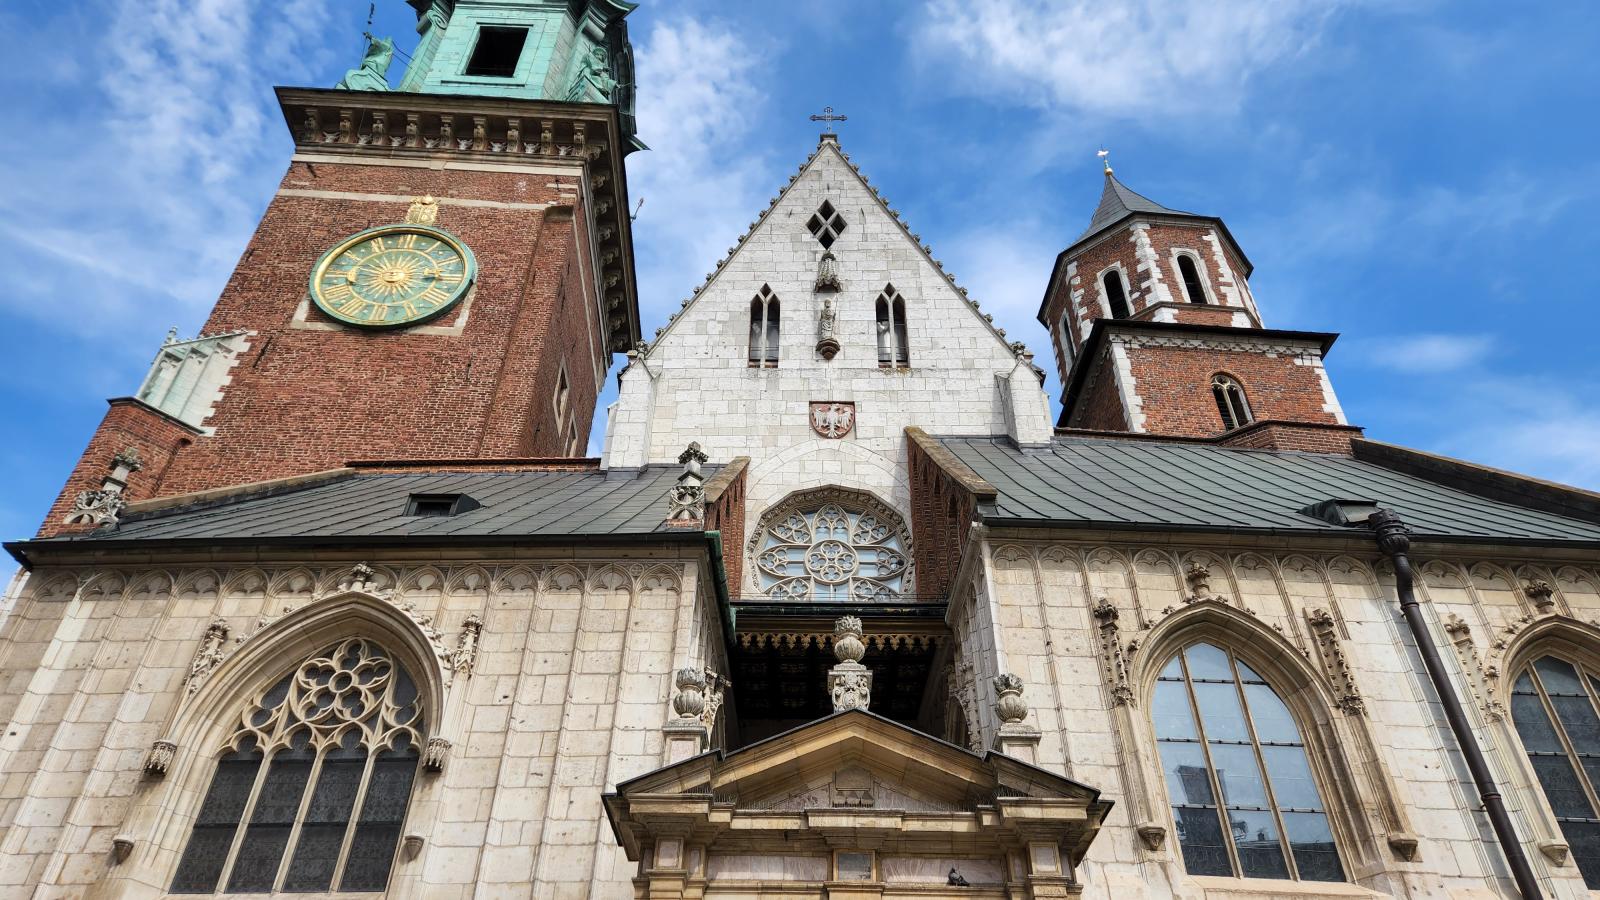 Façade of Waweł Cathedral in Kraków.